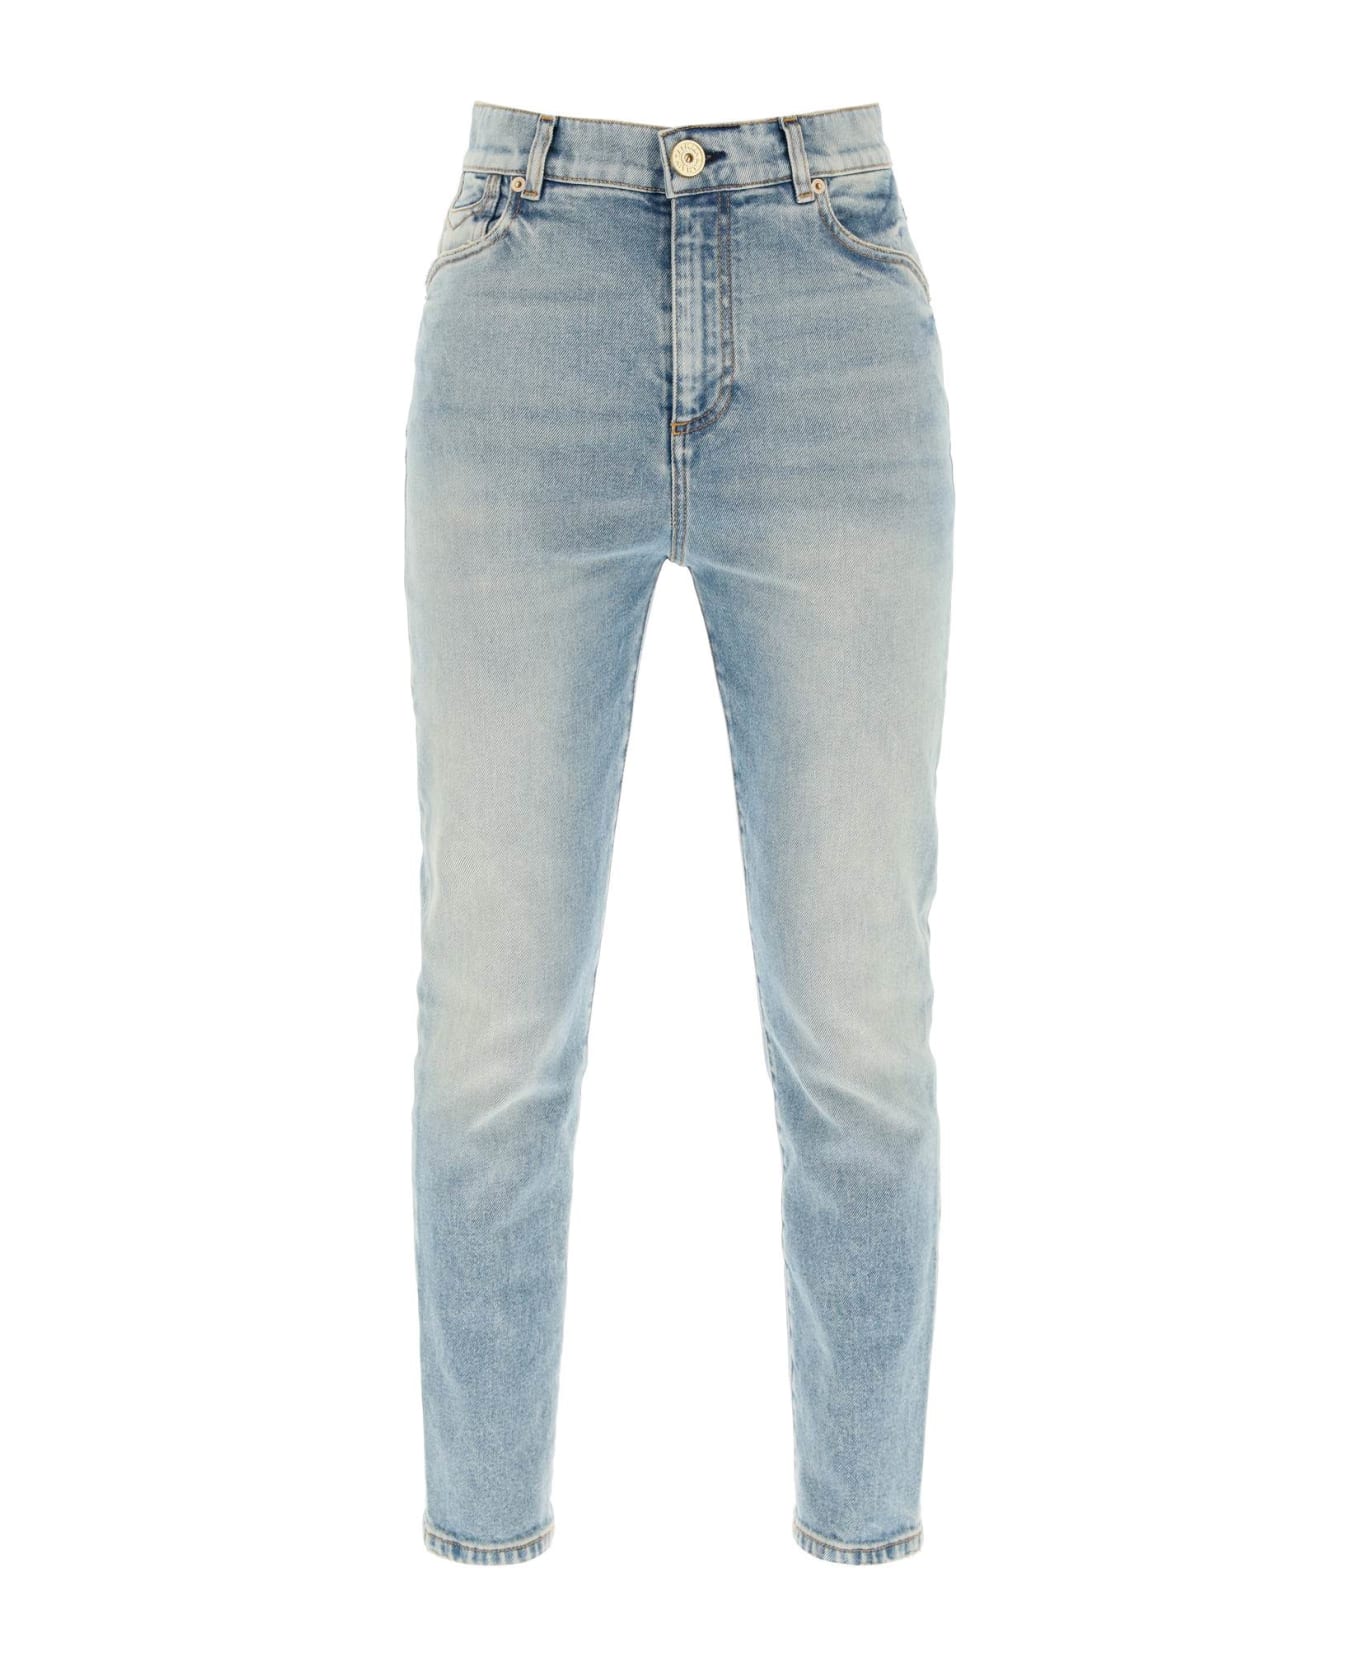 Balmain High-waisted Slim Jeans - BLEU JEAN (Light blue) デニム